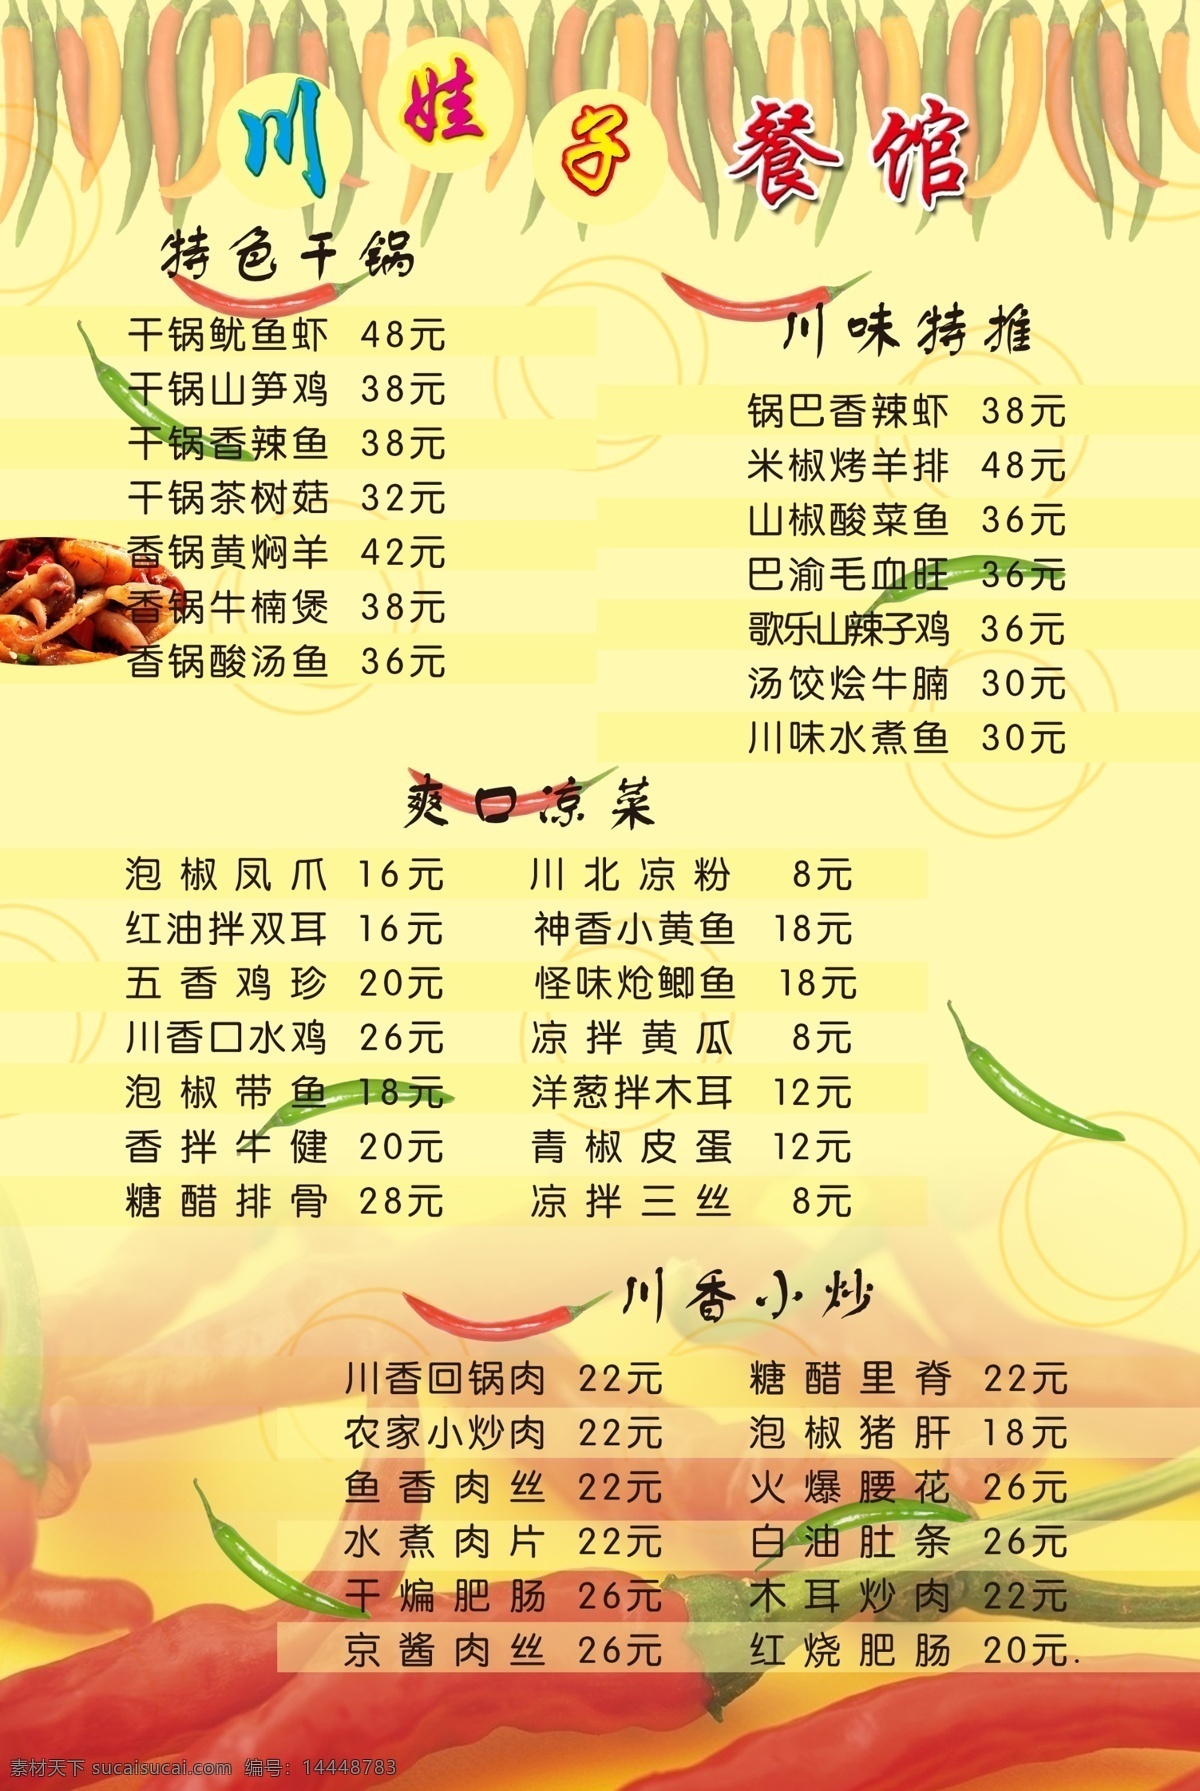 川味菜谱 彩色 辣椒 红色 绿色 淡黄色底纹 菜单 菜单菜谱 广告设计模板 源文件